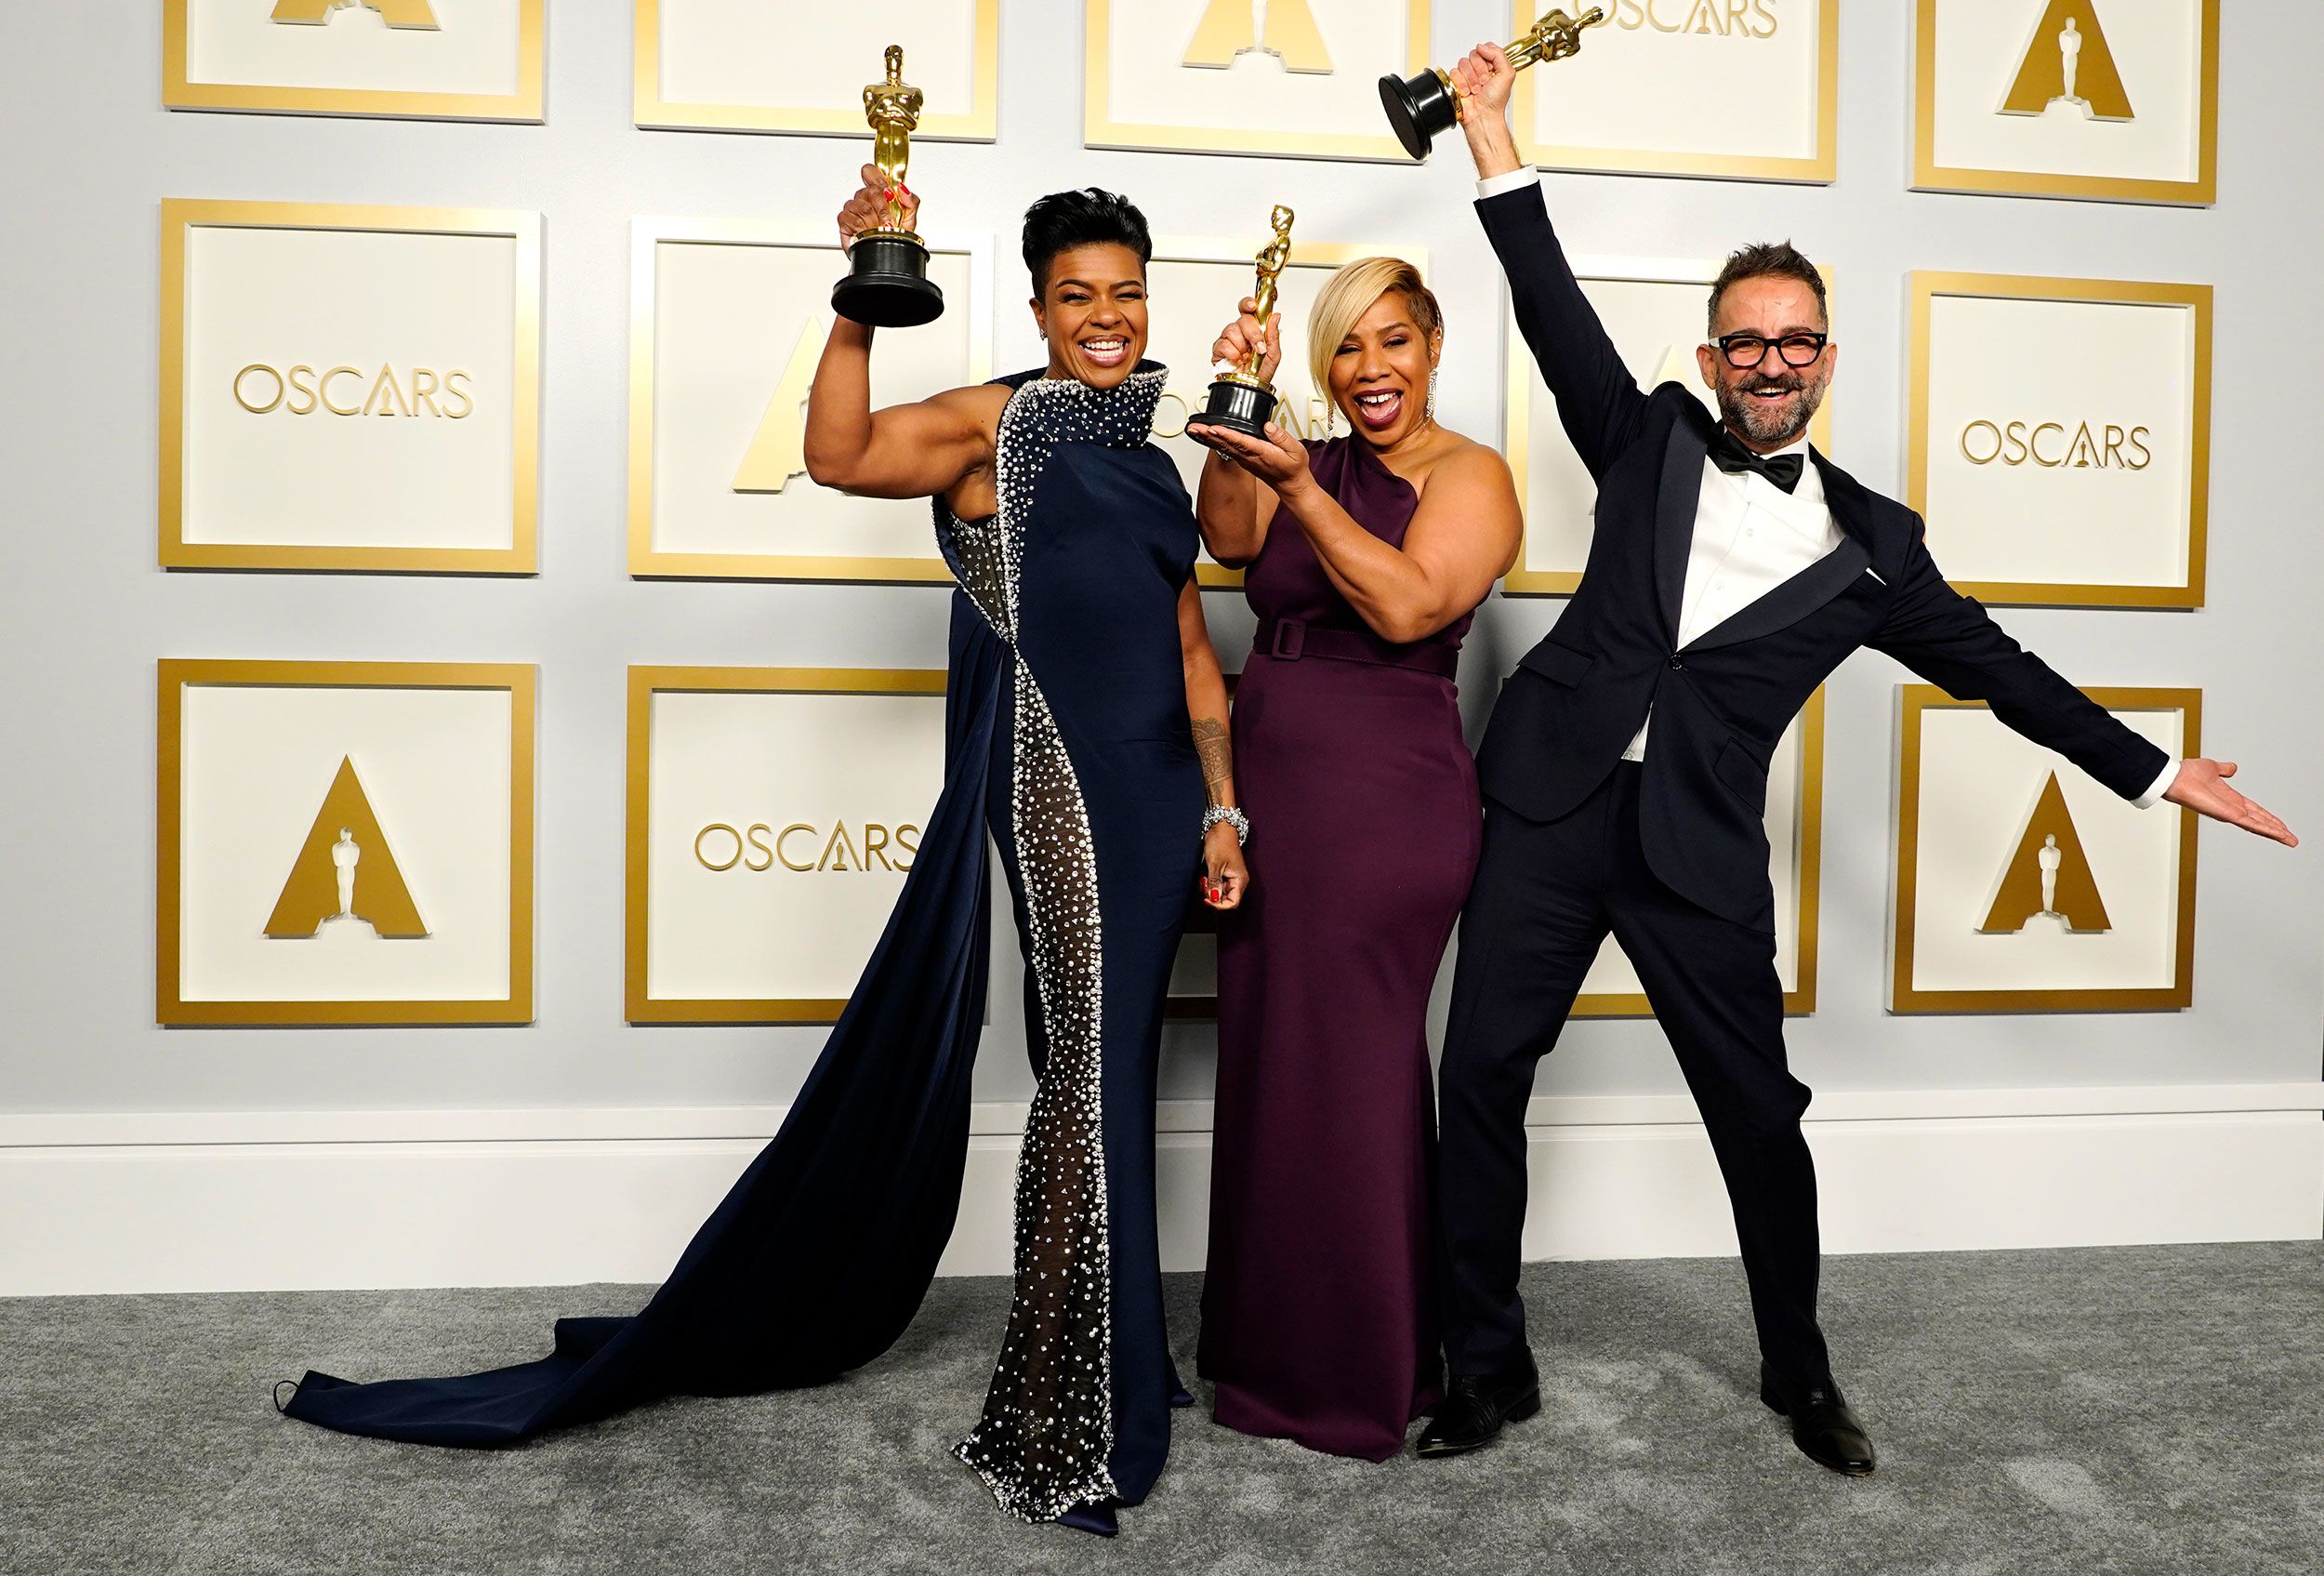 Oscars 2021: 4 major milestones from a historically weird Oscars - Vox